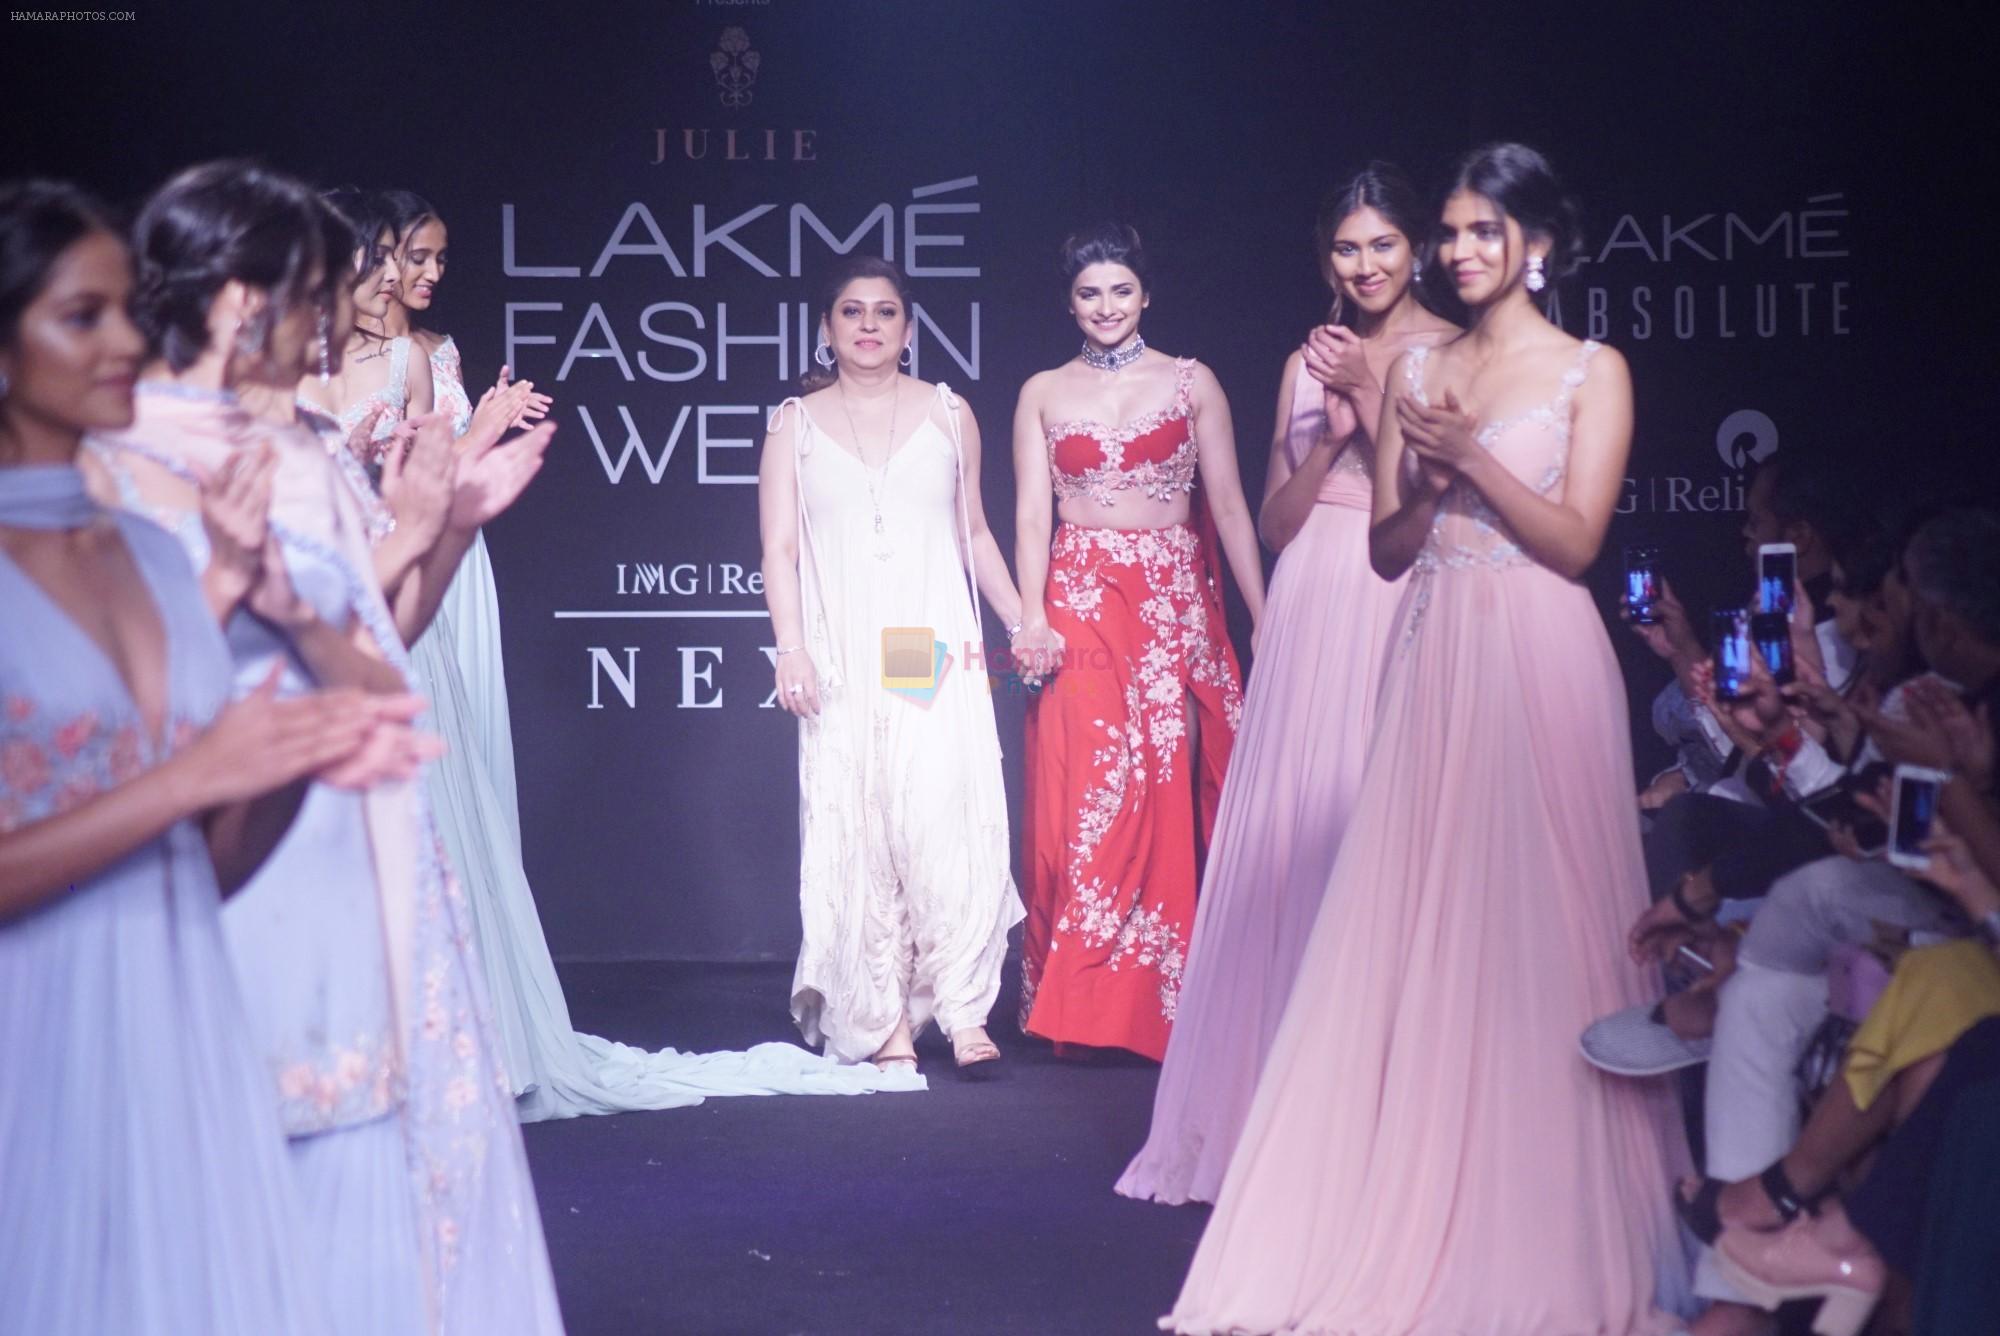 Prachi Desai walk the ramp for 6 degree studio Show at lakme fashion week on 27th Aug 2018